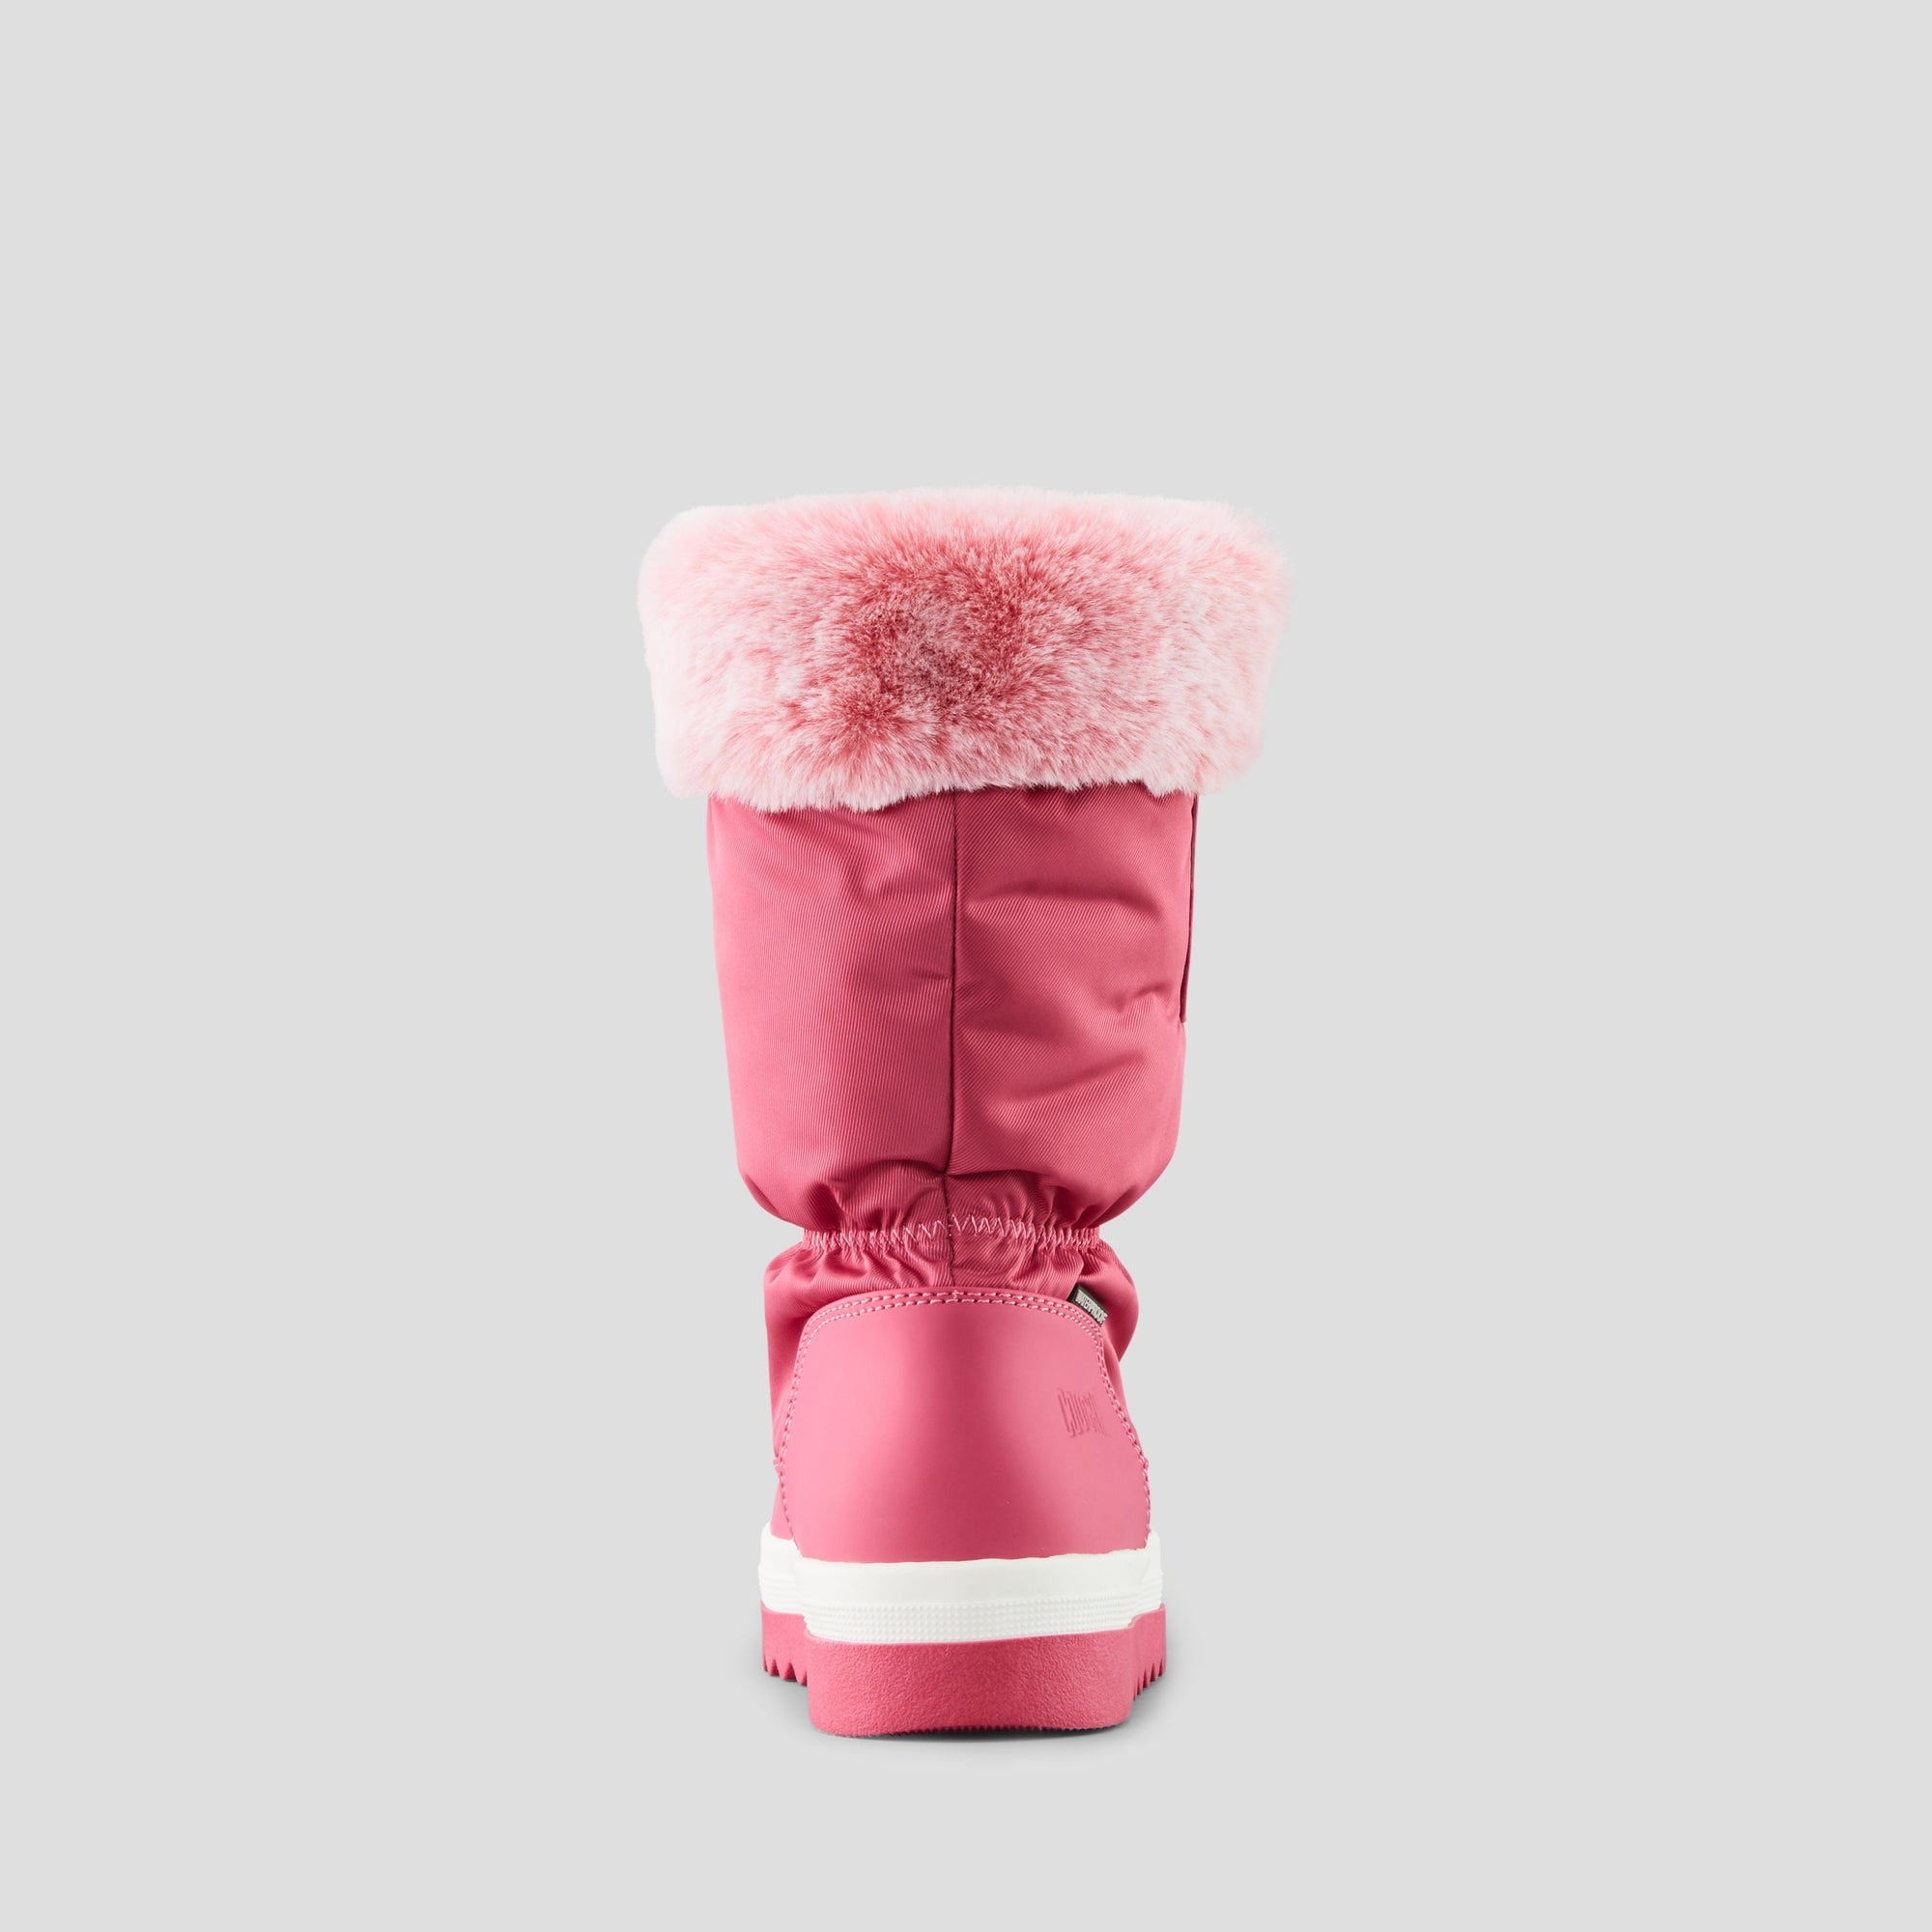 Merry - Botte d'hiver imperméable en nylon (junior) - Colour Raspberry